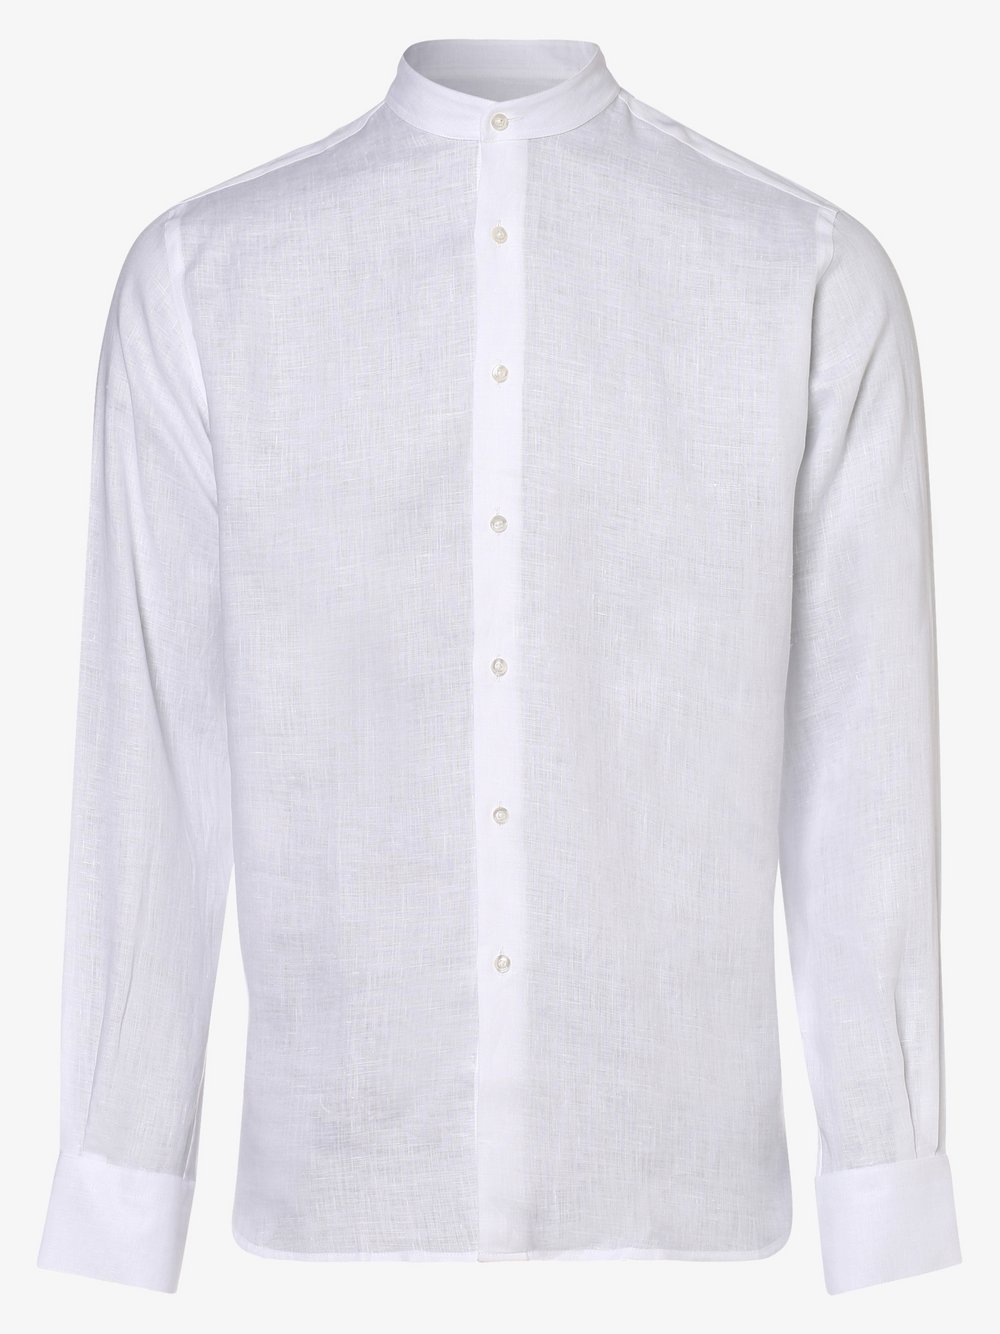 KARL LAGERFELD - Męska koszula lniana, biały